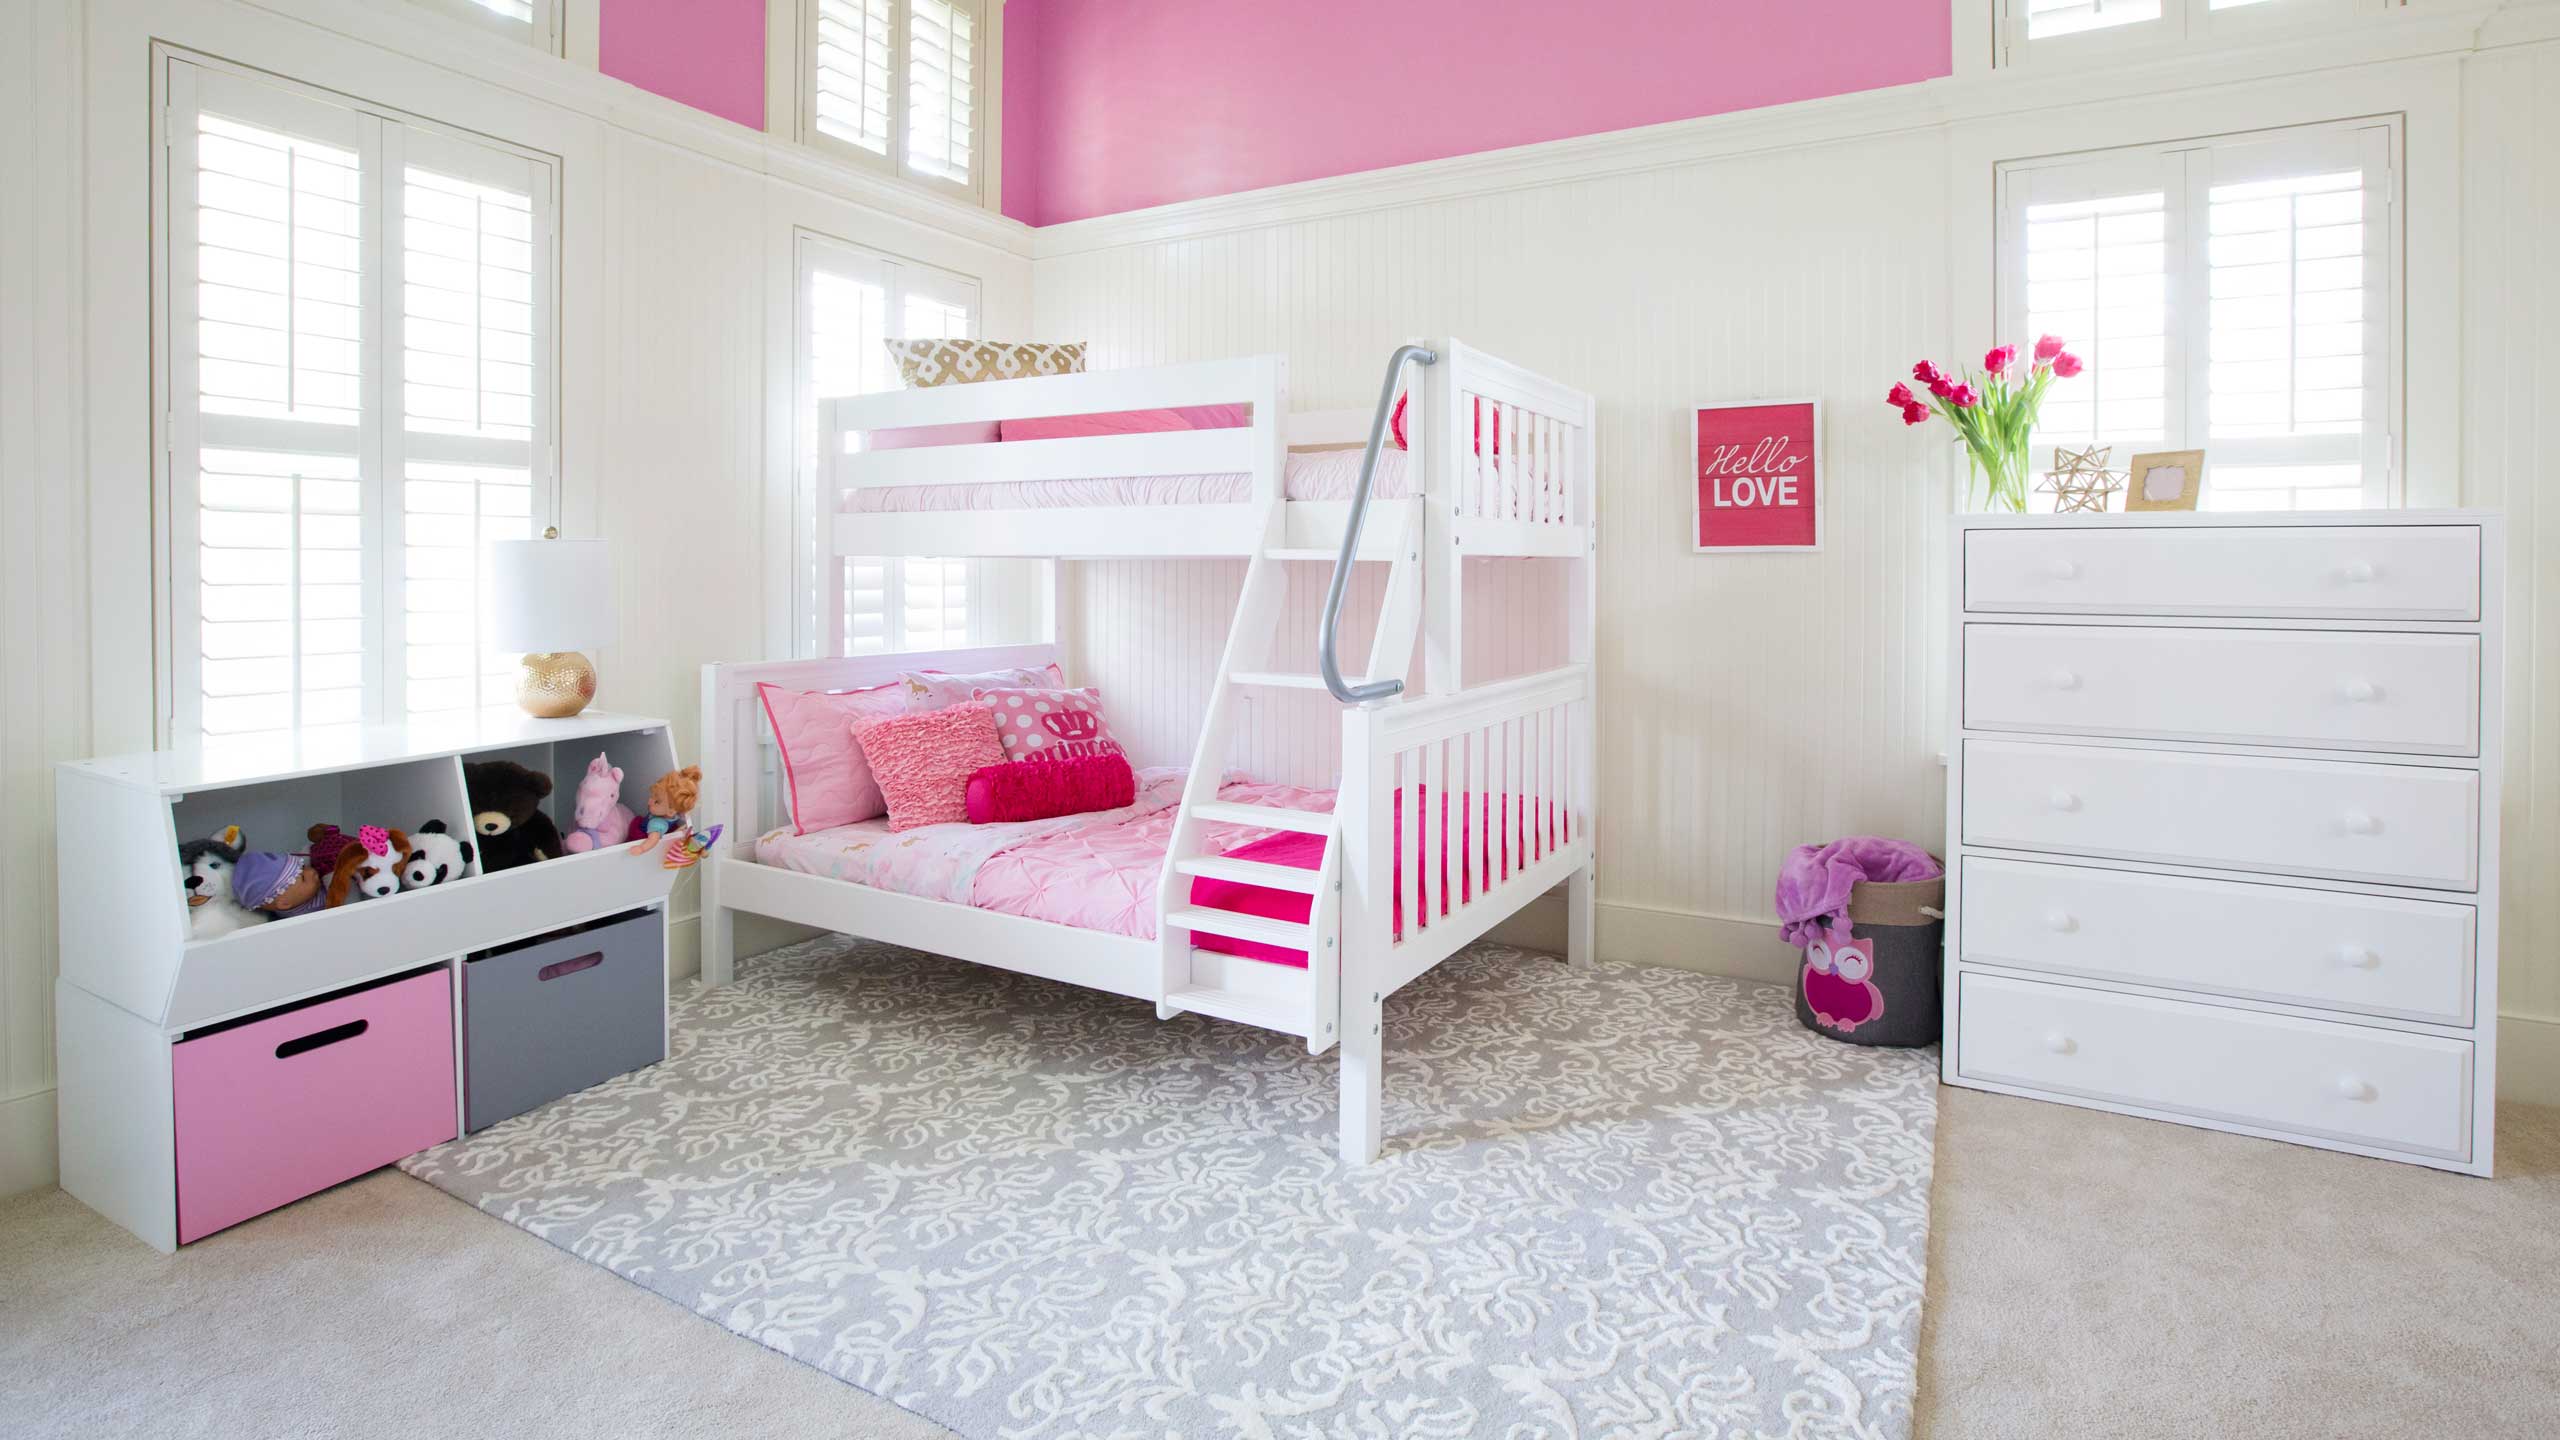 childrens bedroom furniture on sale